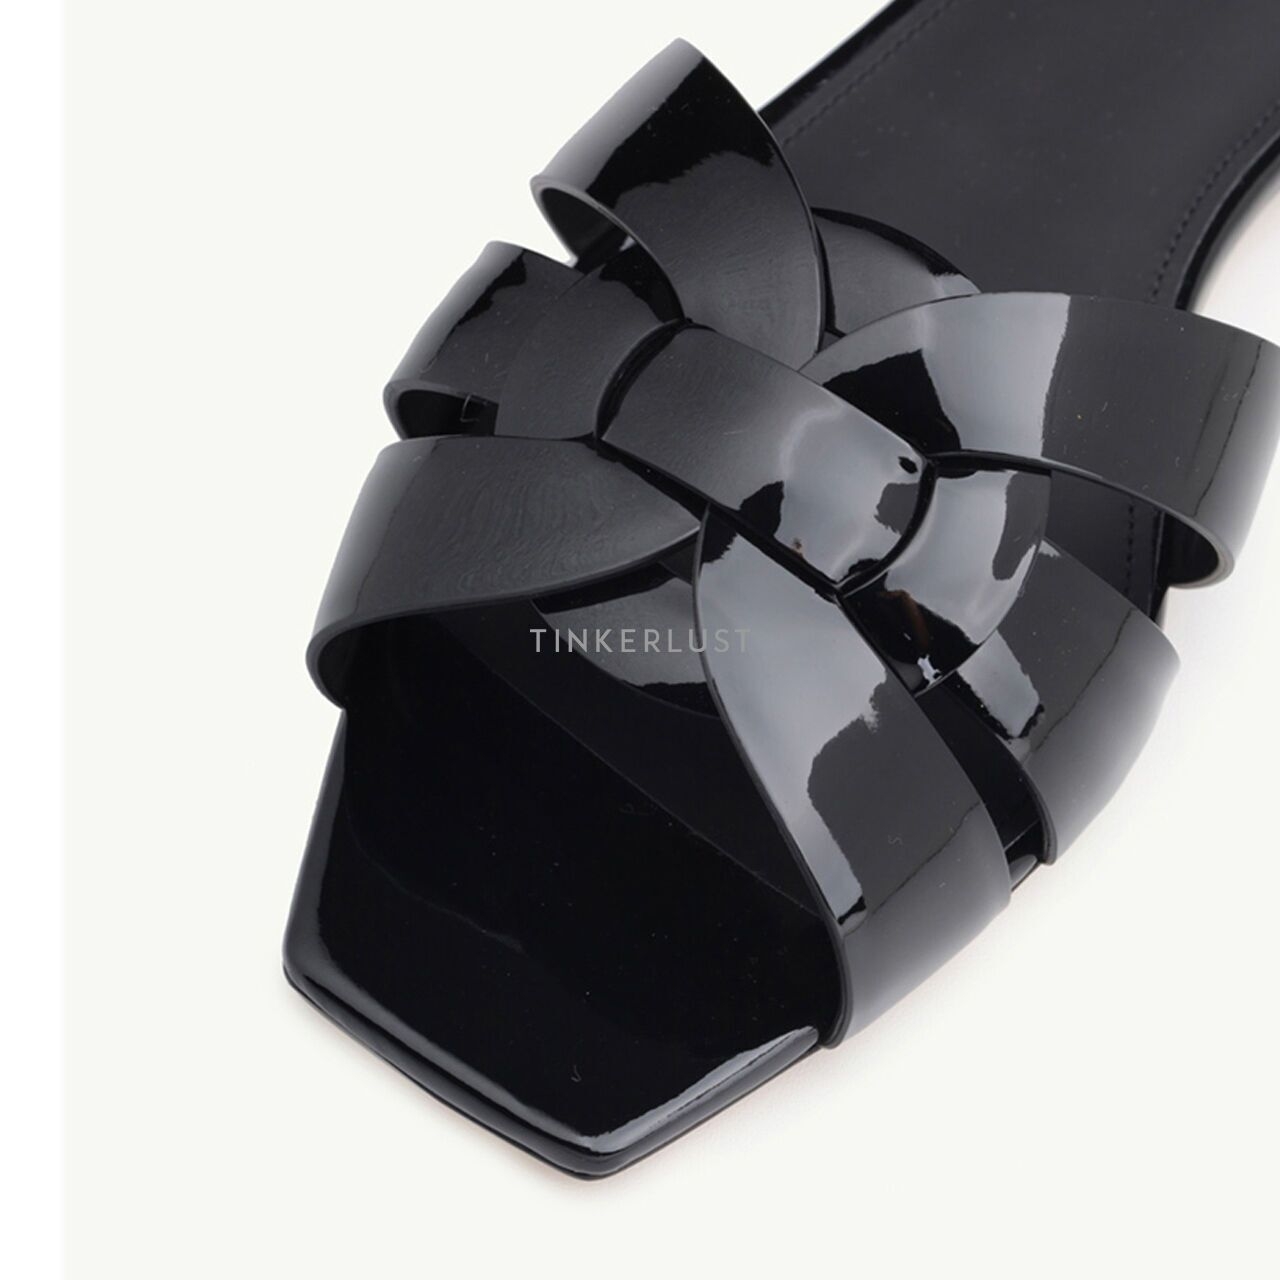 Saint Laurent Nu Pieds 0.5cm Tribute in Black Patent Sandals